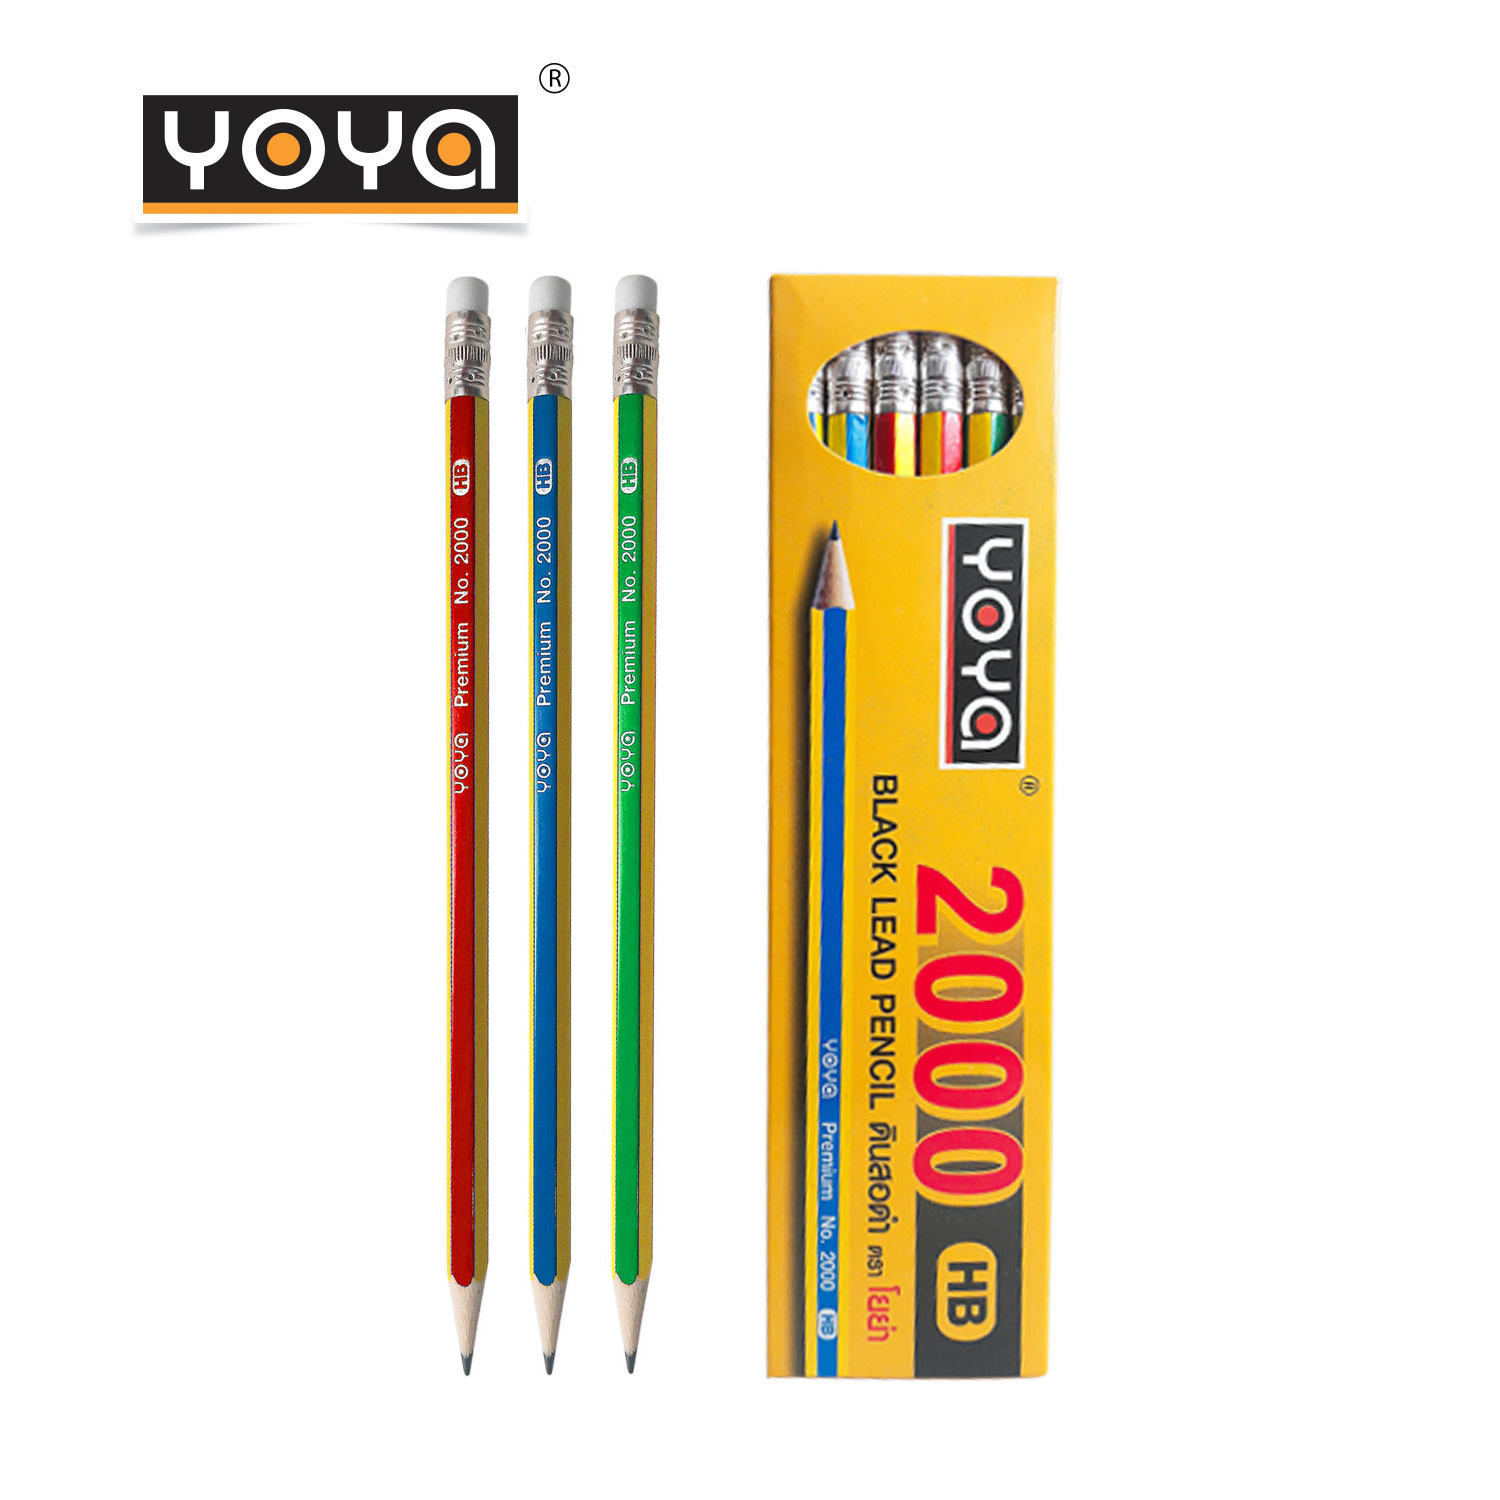 YOYA ดินสอไม้ HB แพ็ค 12 รุ่น 2000